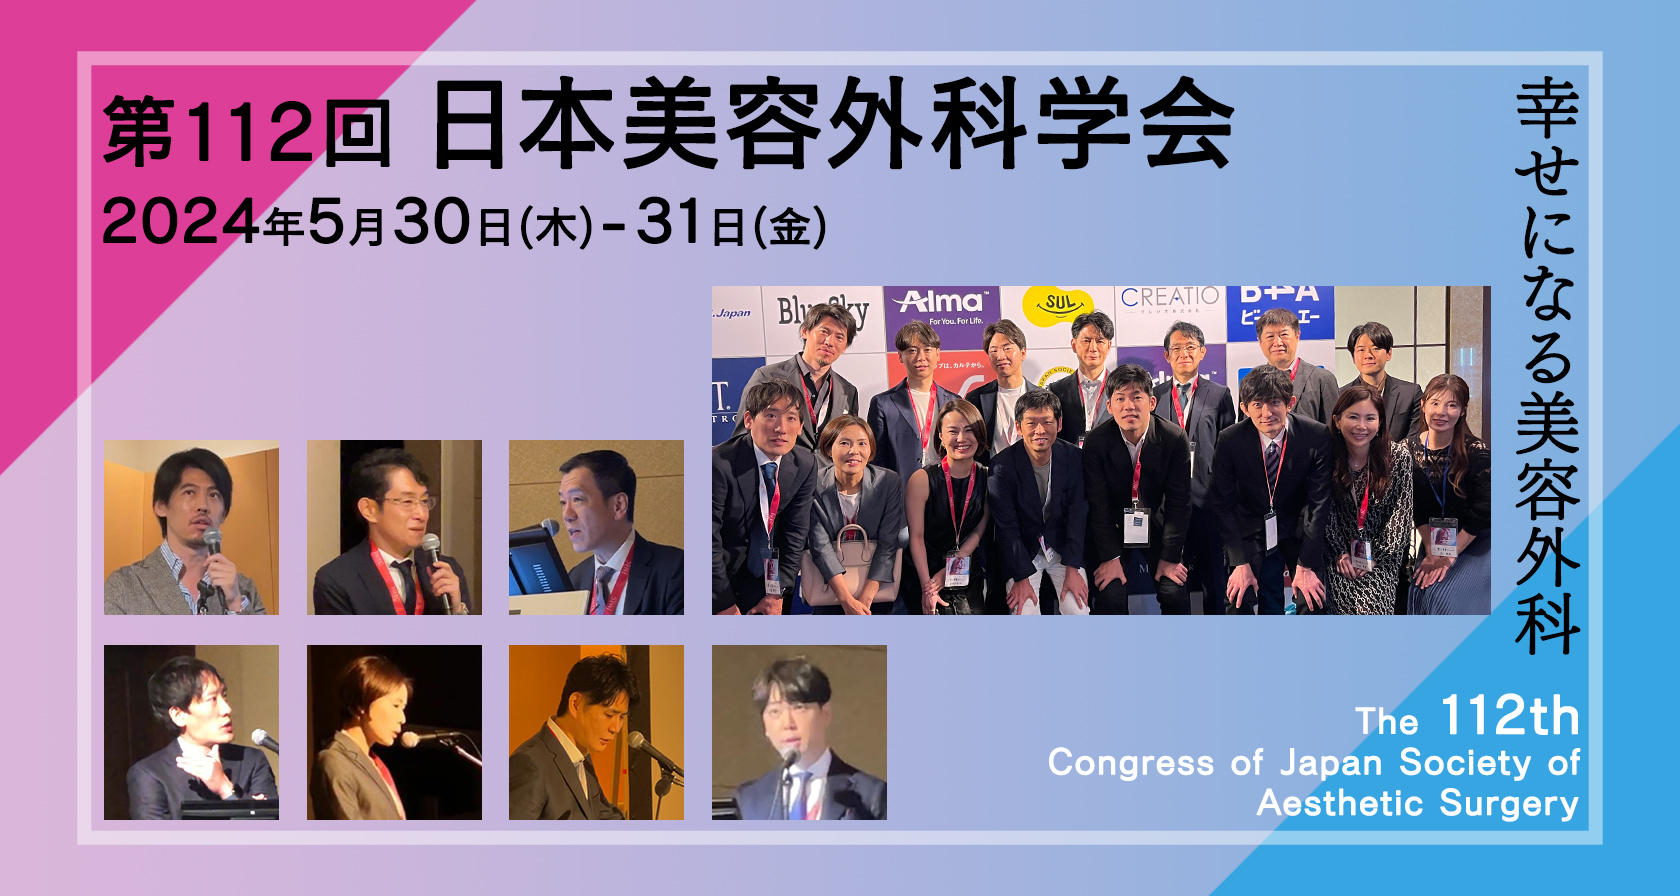 「第112回 日本美容外科学会」で当院の7名の医師が登壇し、全医師が参加しました